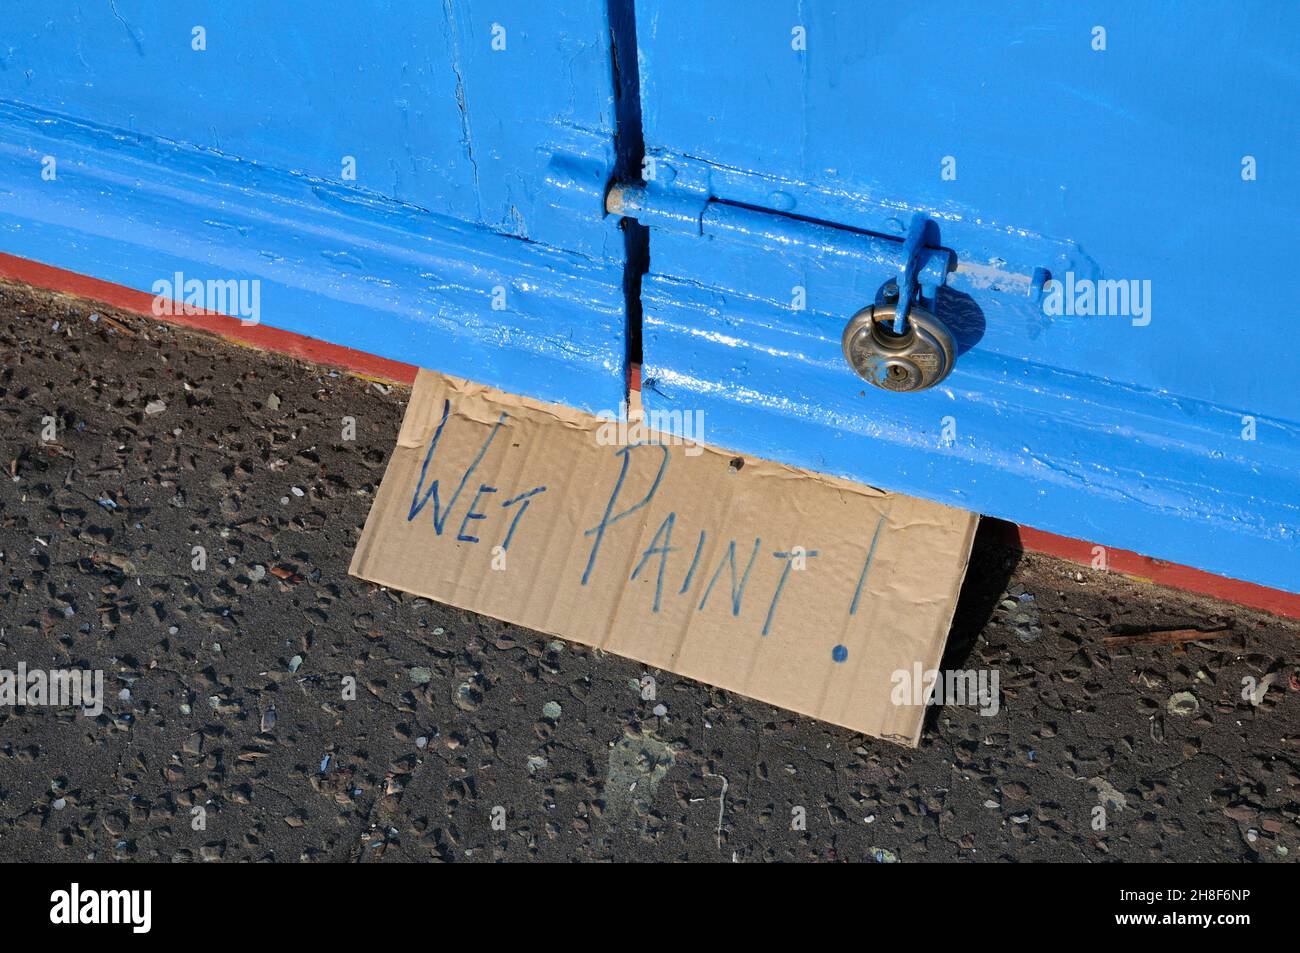 Wet Paint sign written on cardboard Stock Photo